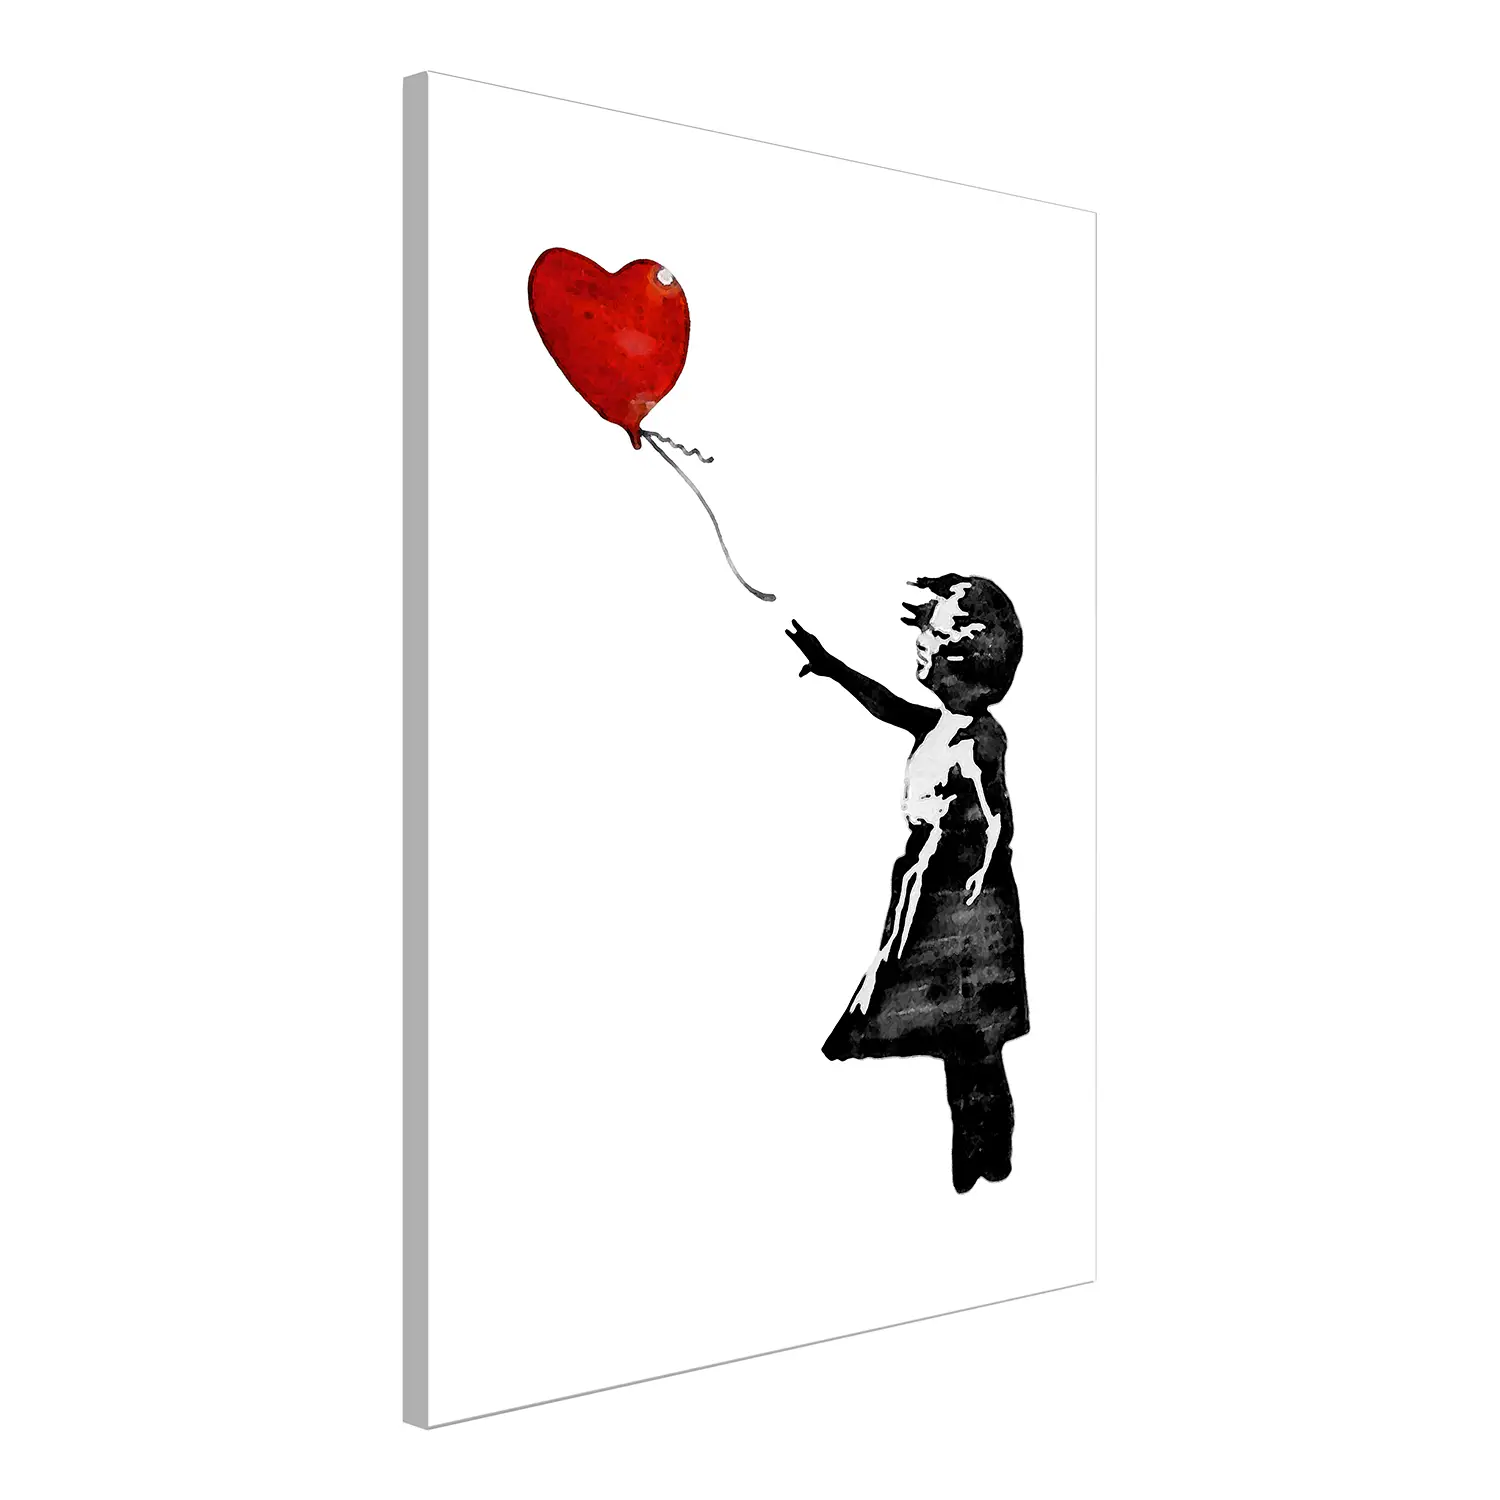 Balloon Wandbild (Banksy) Girl with